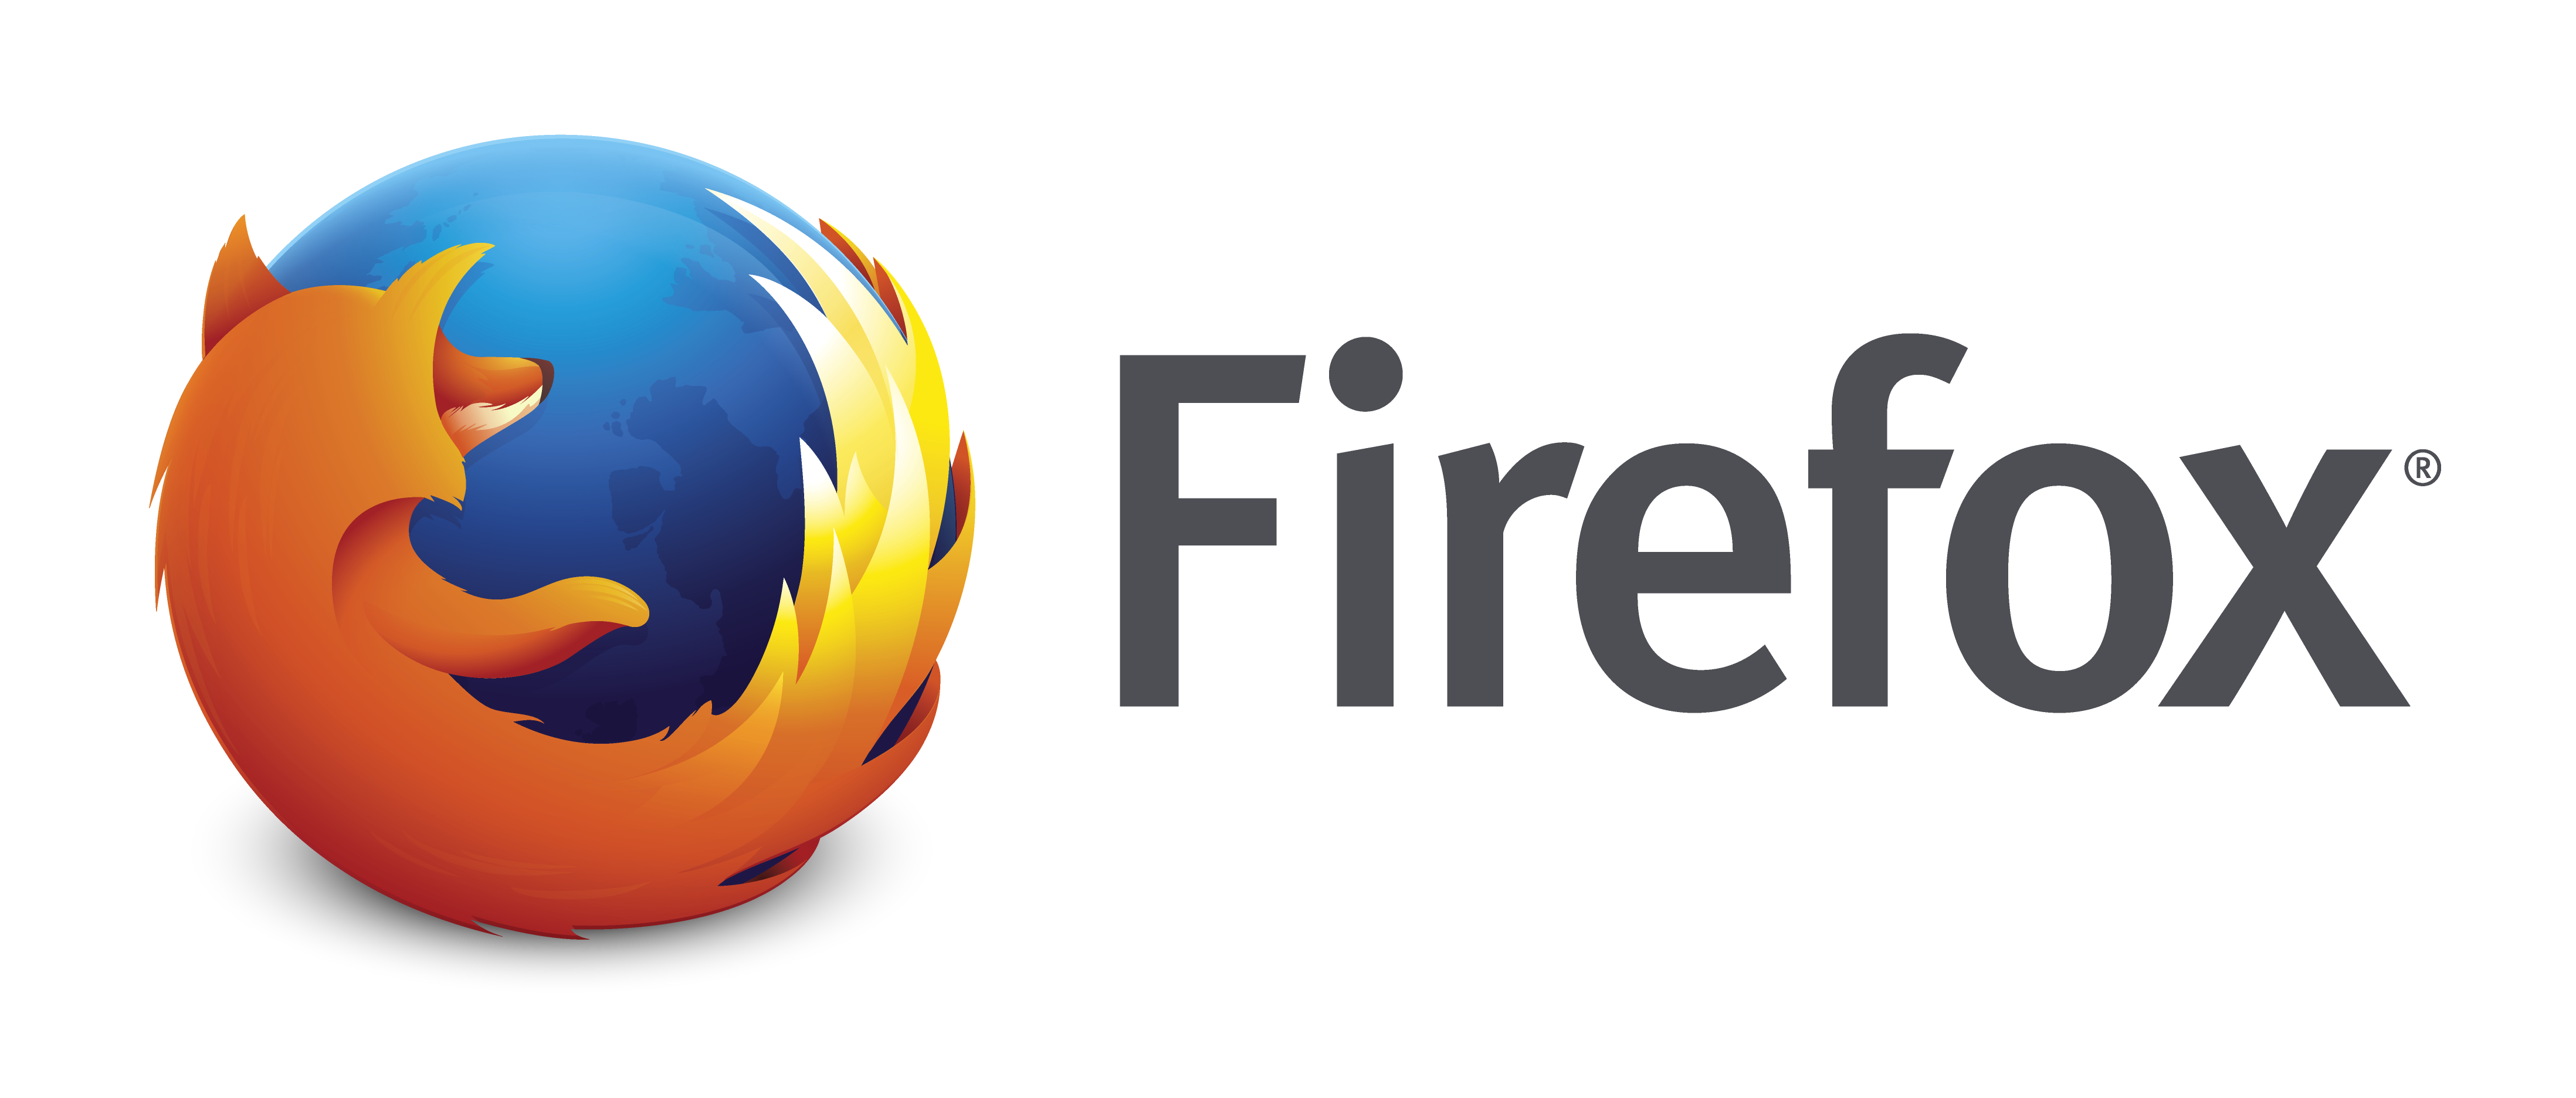 Firefox XP ve Vista'yı Eylül 2017'ye kadar destekleyecek